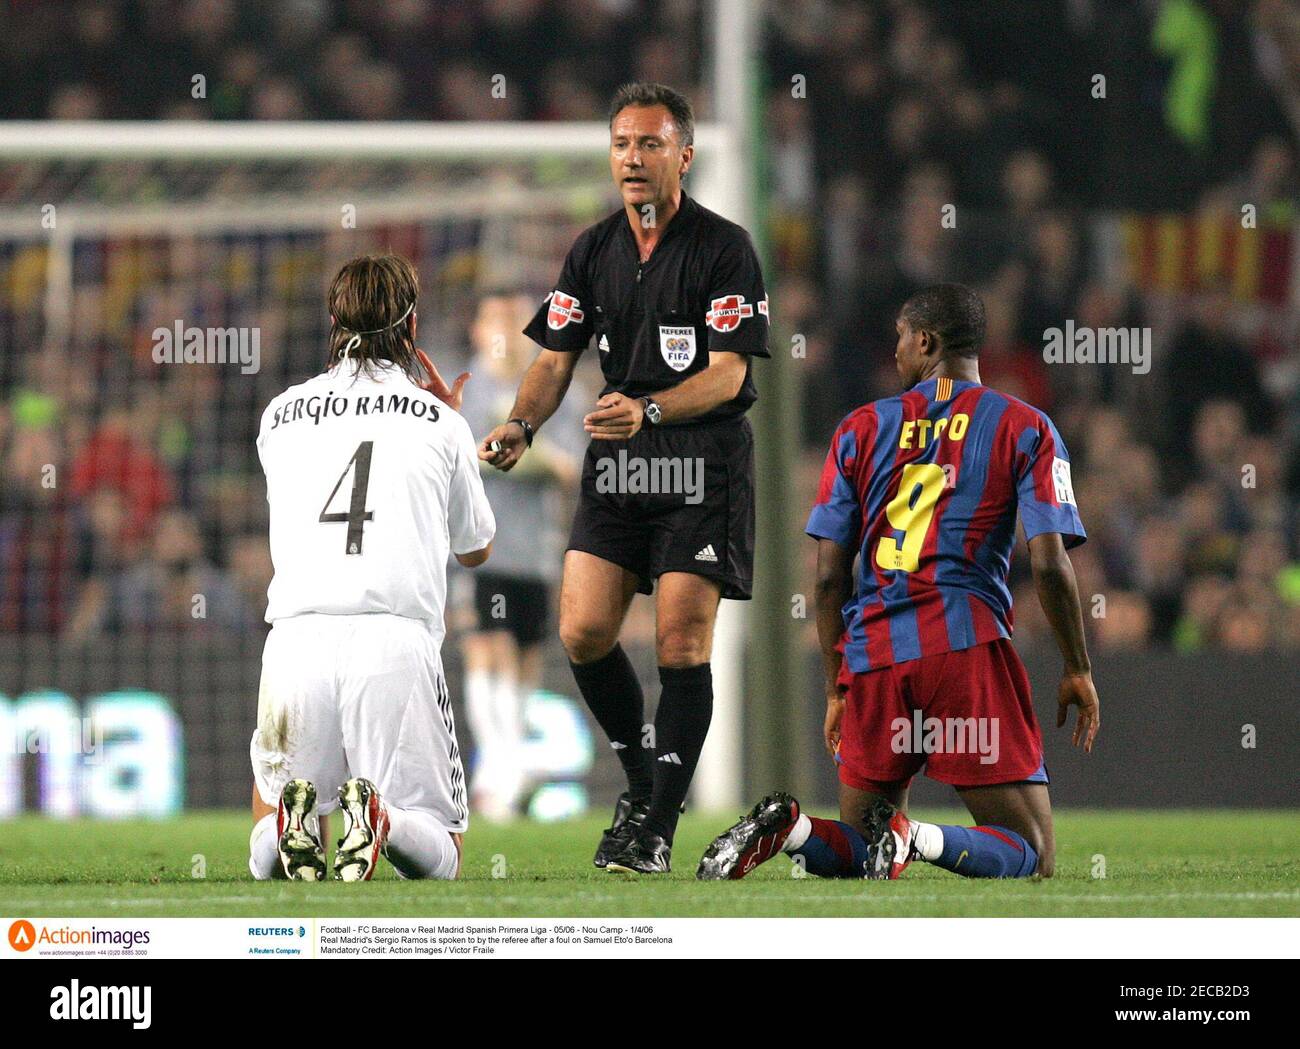 Fútbol - FC Barcelona v Real Madrid Spanish primera Liga - 05/06 - Nou Camp  - 1/4/06 Sergio Ramos del Real Madrid es hablado por el árbitro después de  una falta en